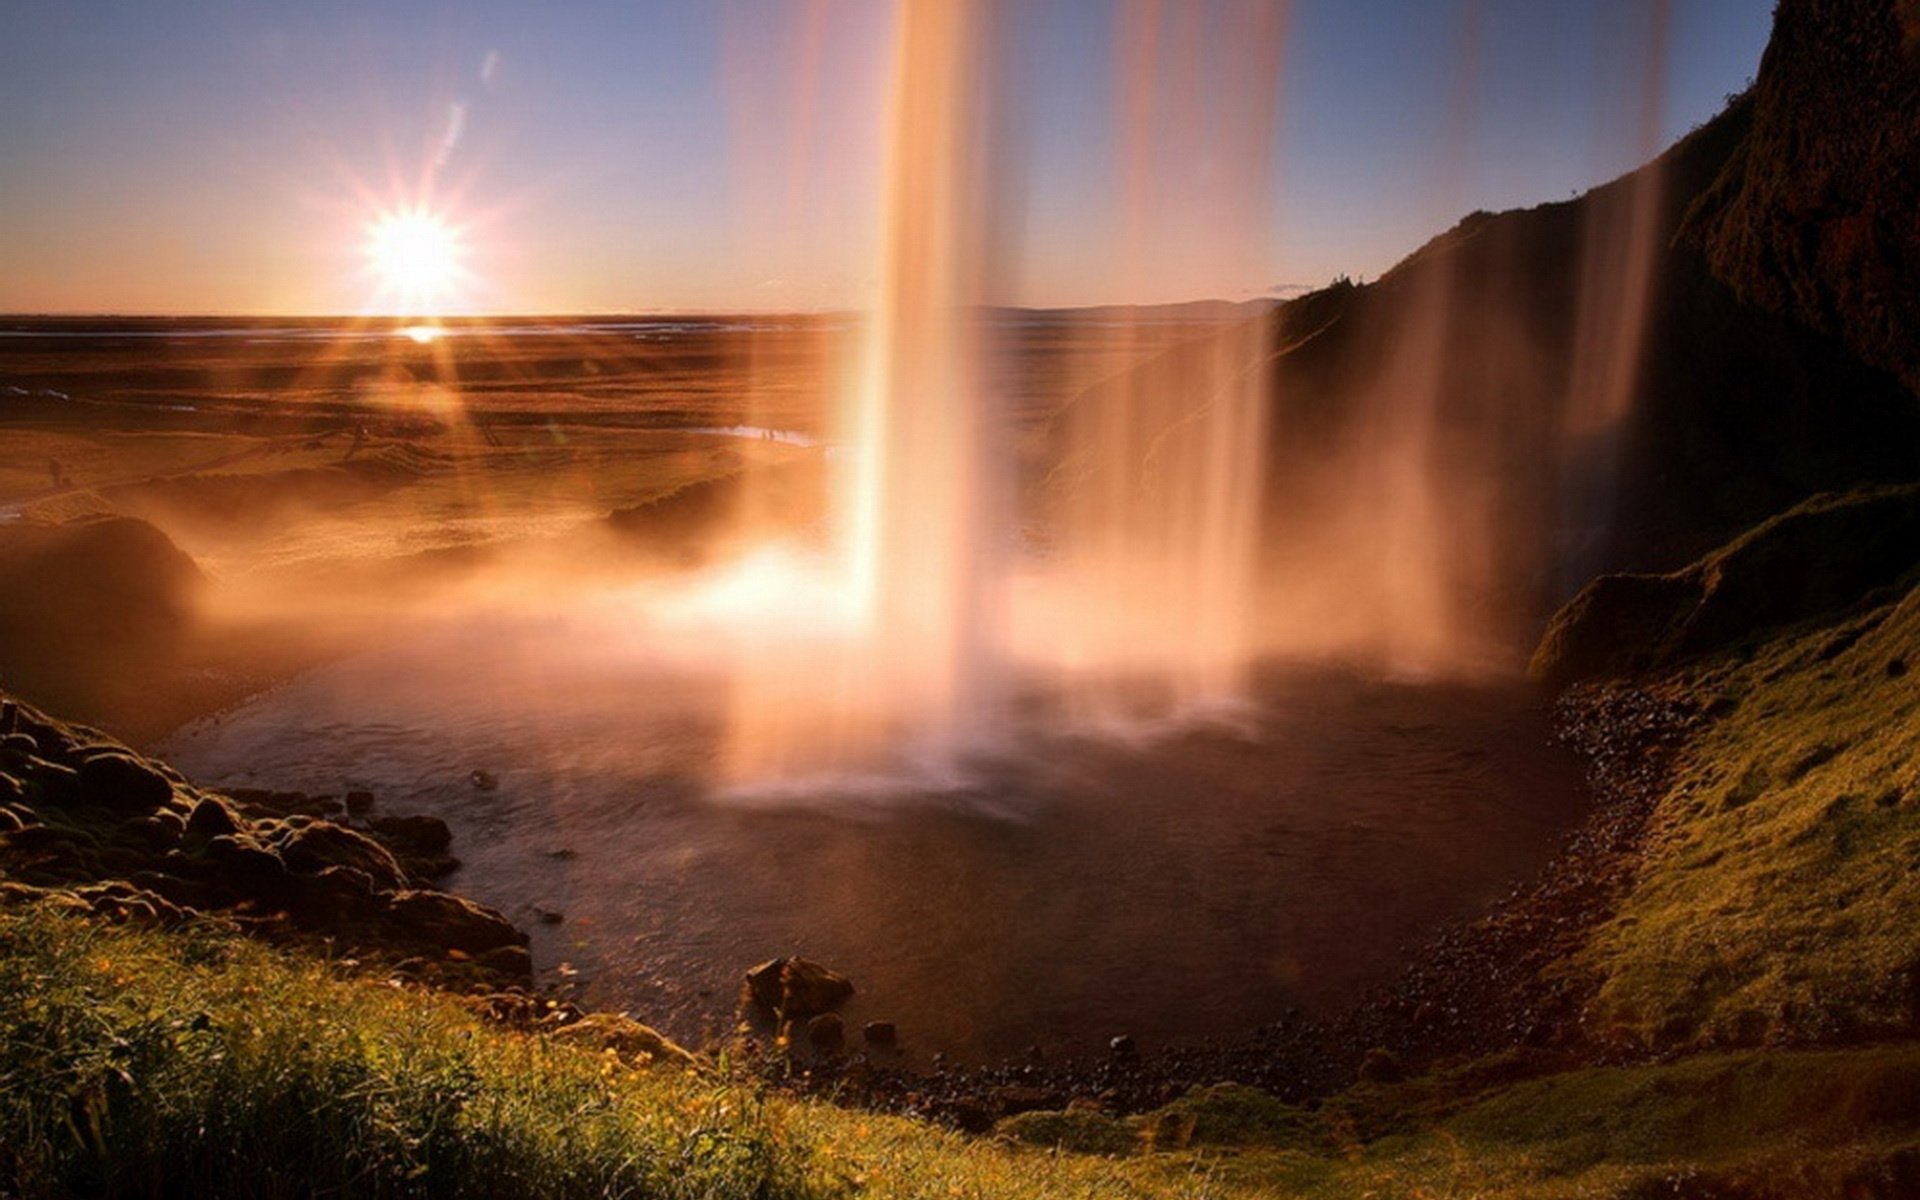 Удивительный вид природы. Водопад Годафосс, Исландия. Пейзажи Джеймса Эпплтона. Водопад Сельяландсфосс, Исландия закат. Удивительные пейзажи.